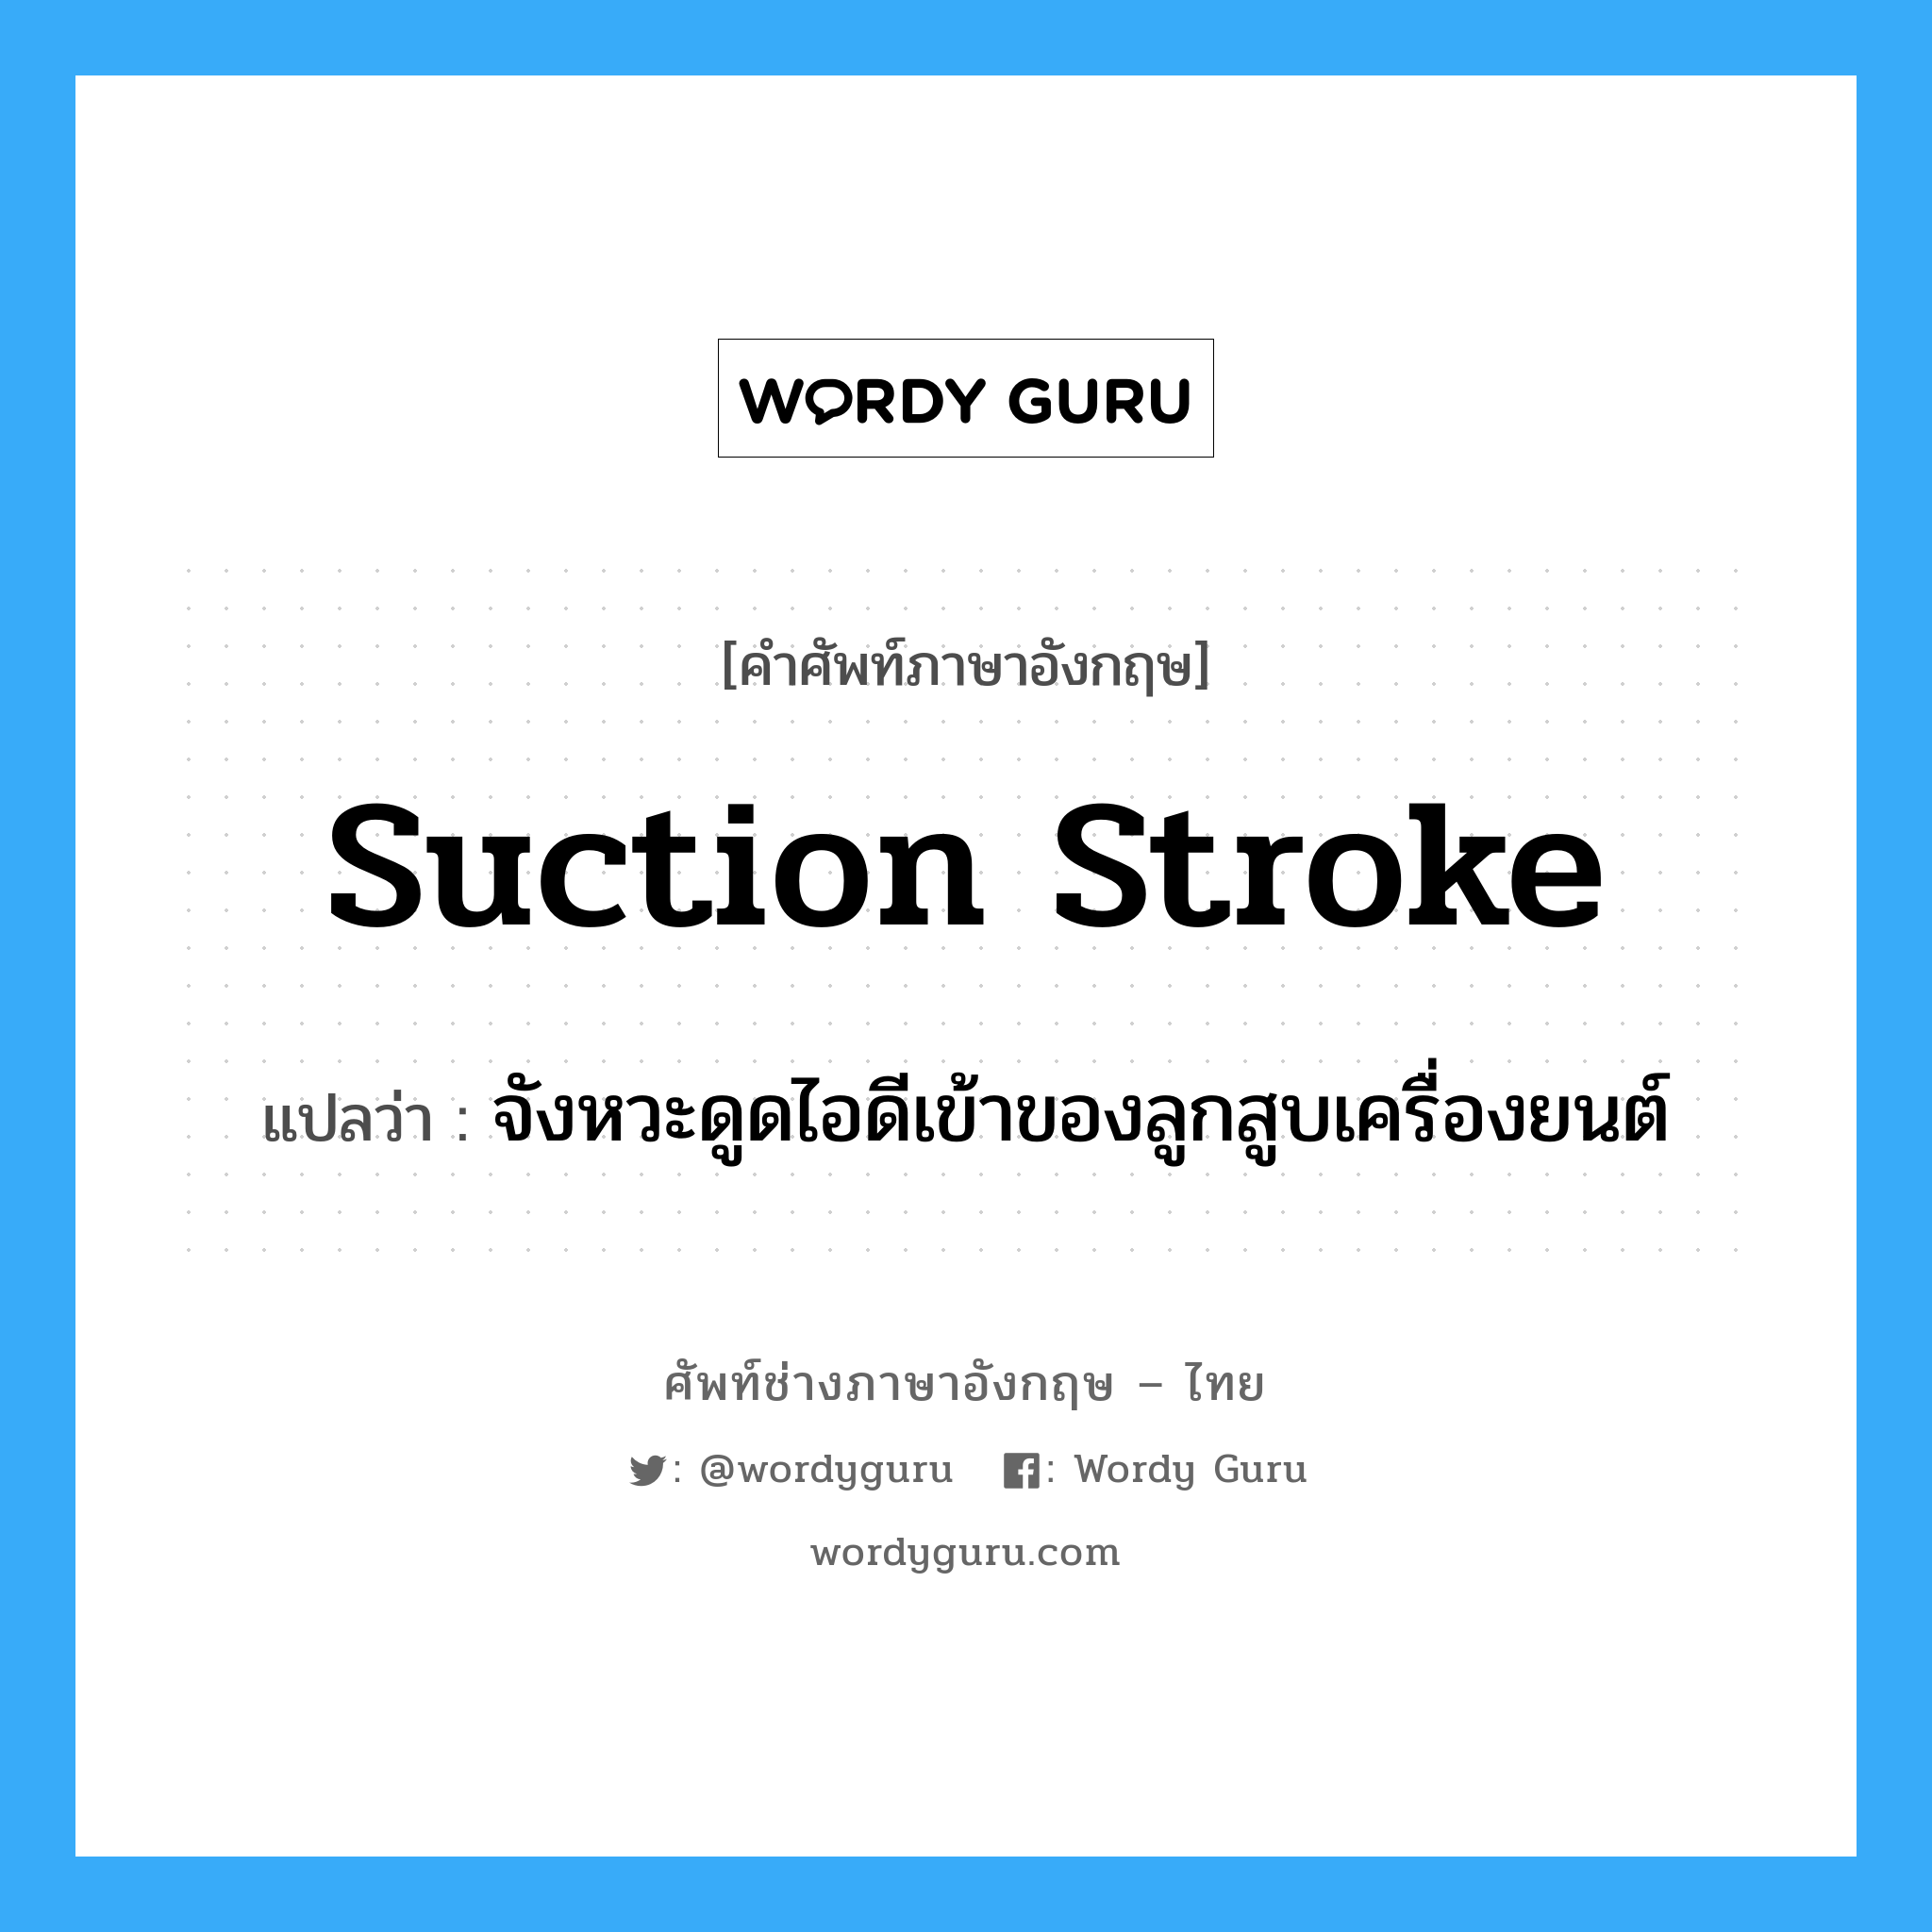 suction stroke แปลว่า?, คำศัพท์ช่างภาษาอังกฤษ - ไทย suction stroke คำศัพท์ภาษาอังกฤษ suction stroke แปลว่า จังหวะดูดไอดีเข้าของลูกสูบเครื่องยนต์